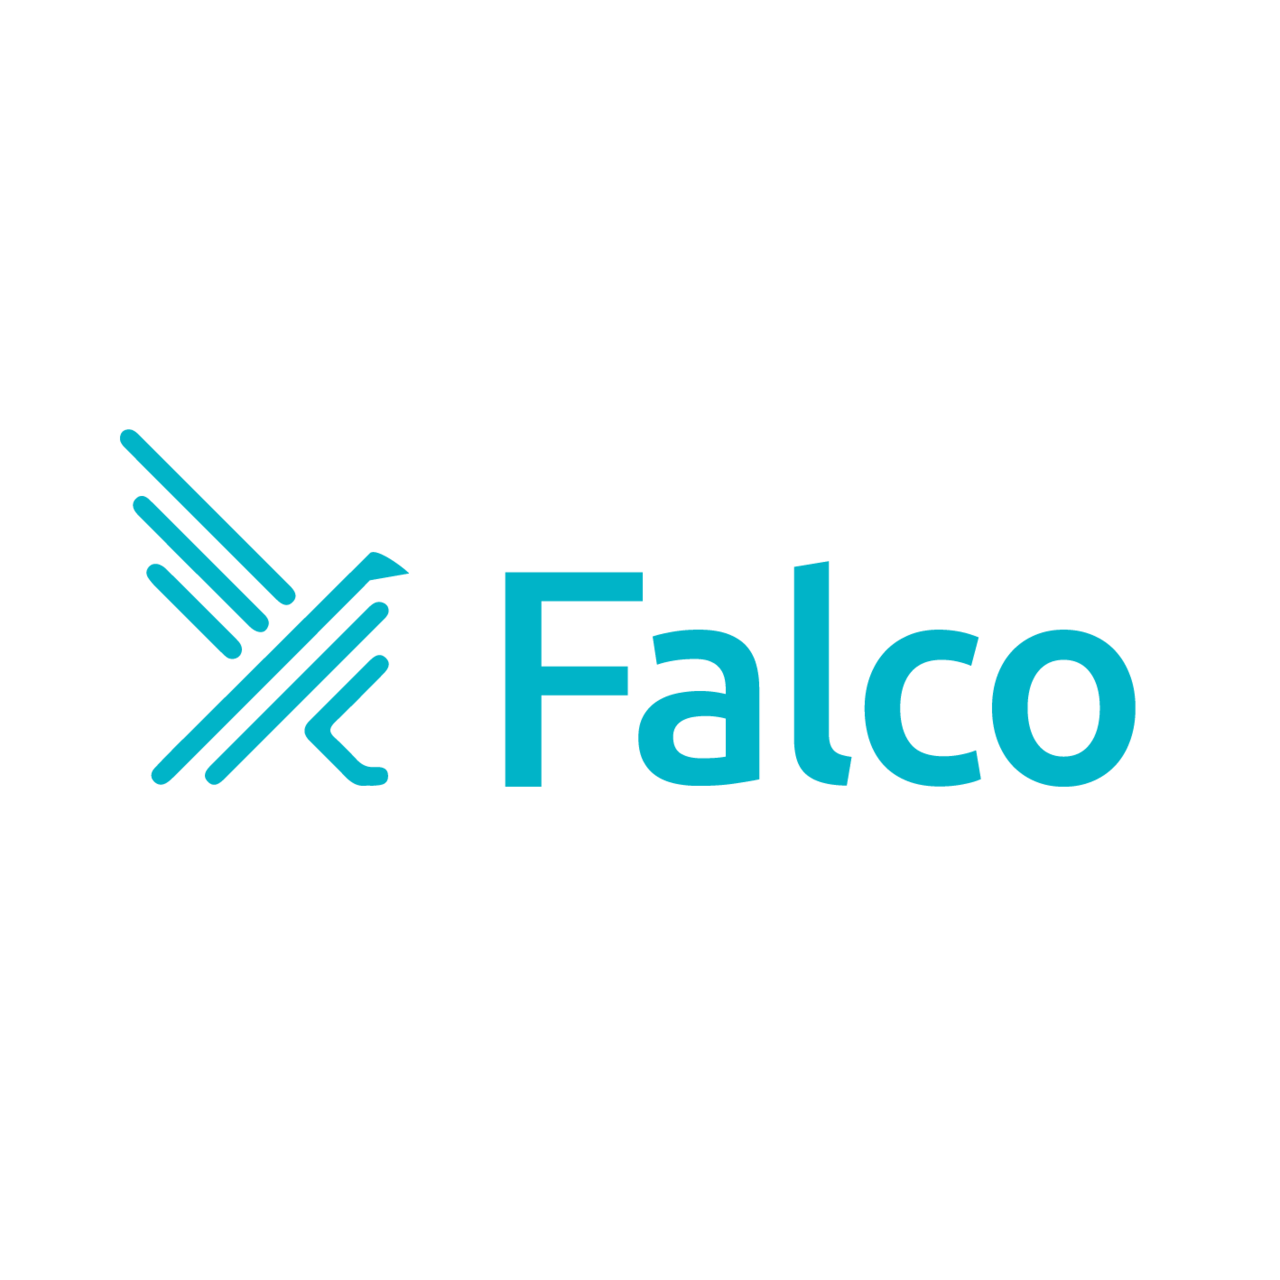 Falcoを用いてCVE-2019-14287 を検知する方法